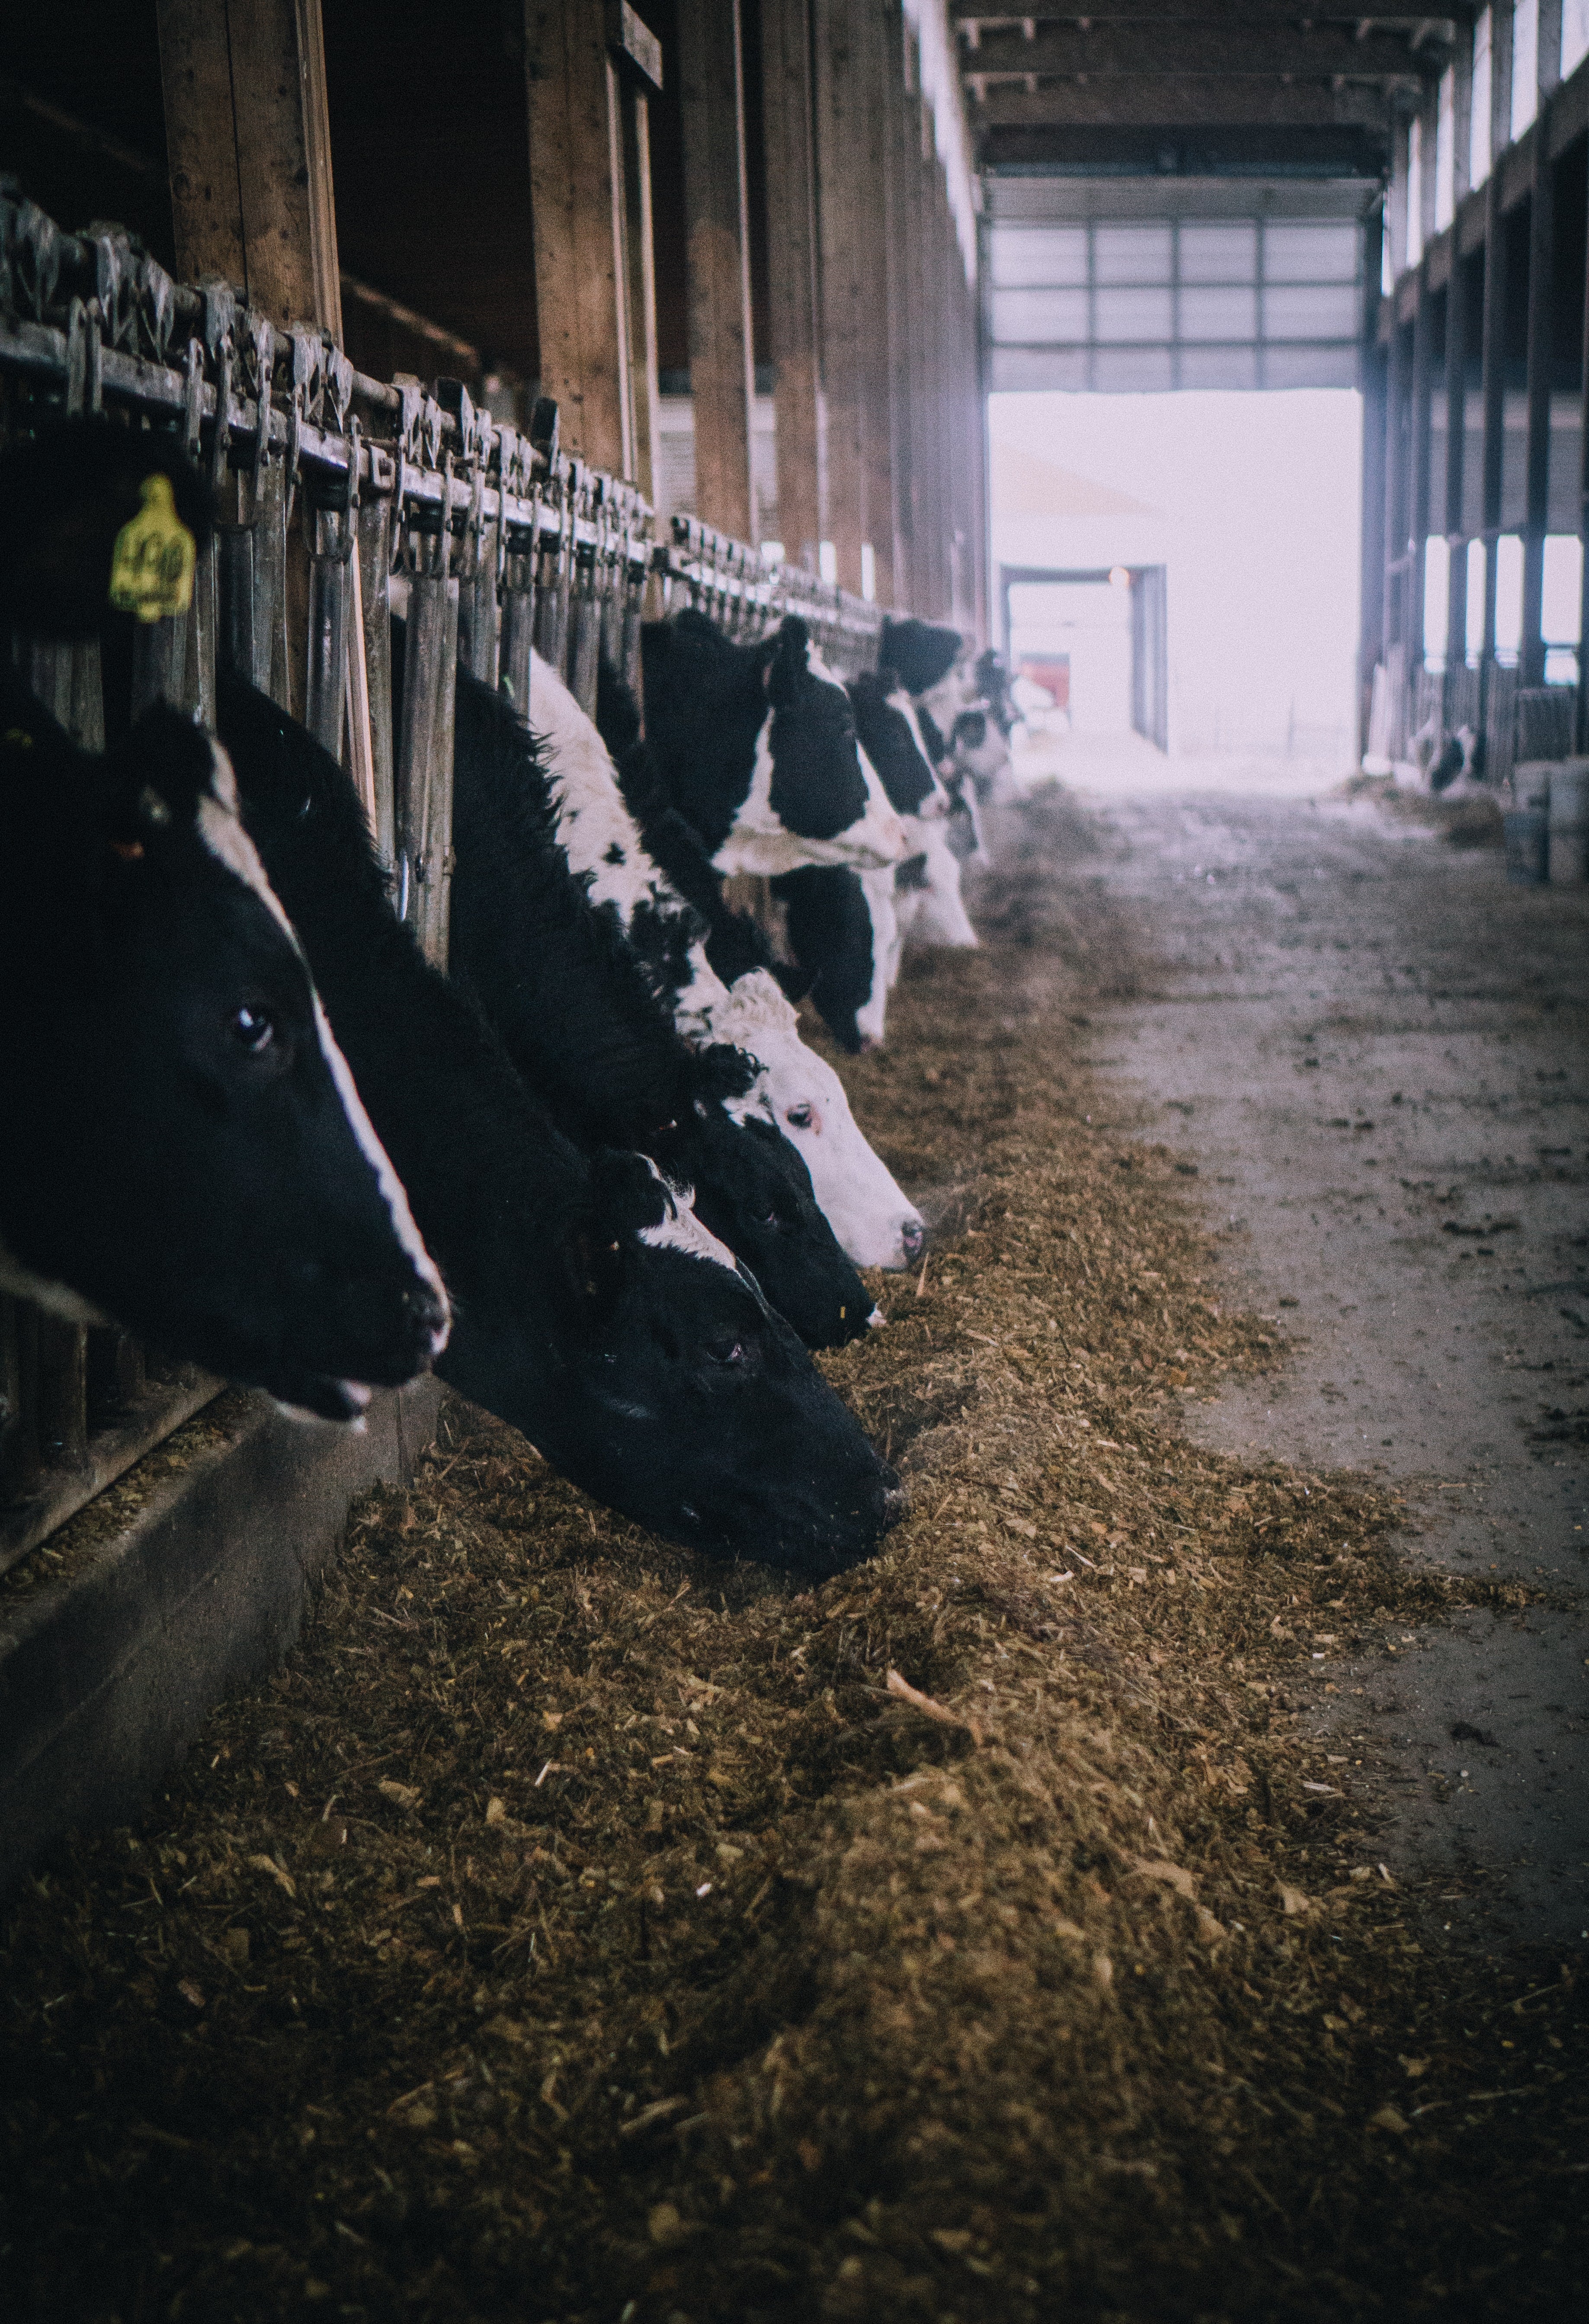 cows in a barn feeding